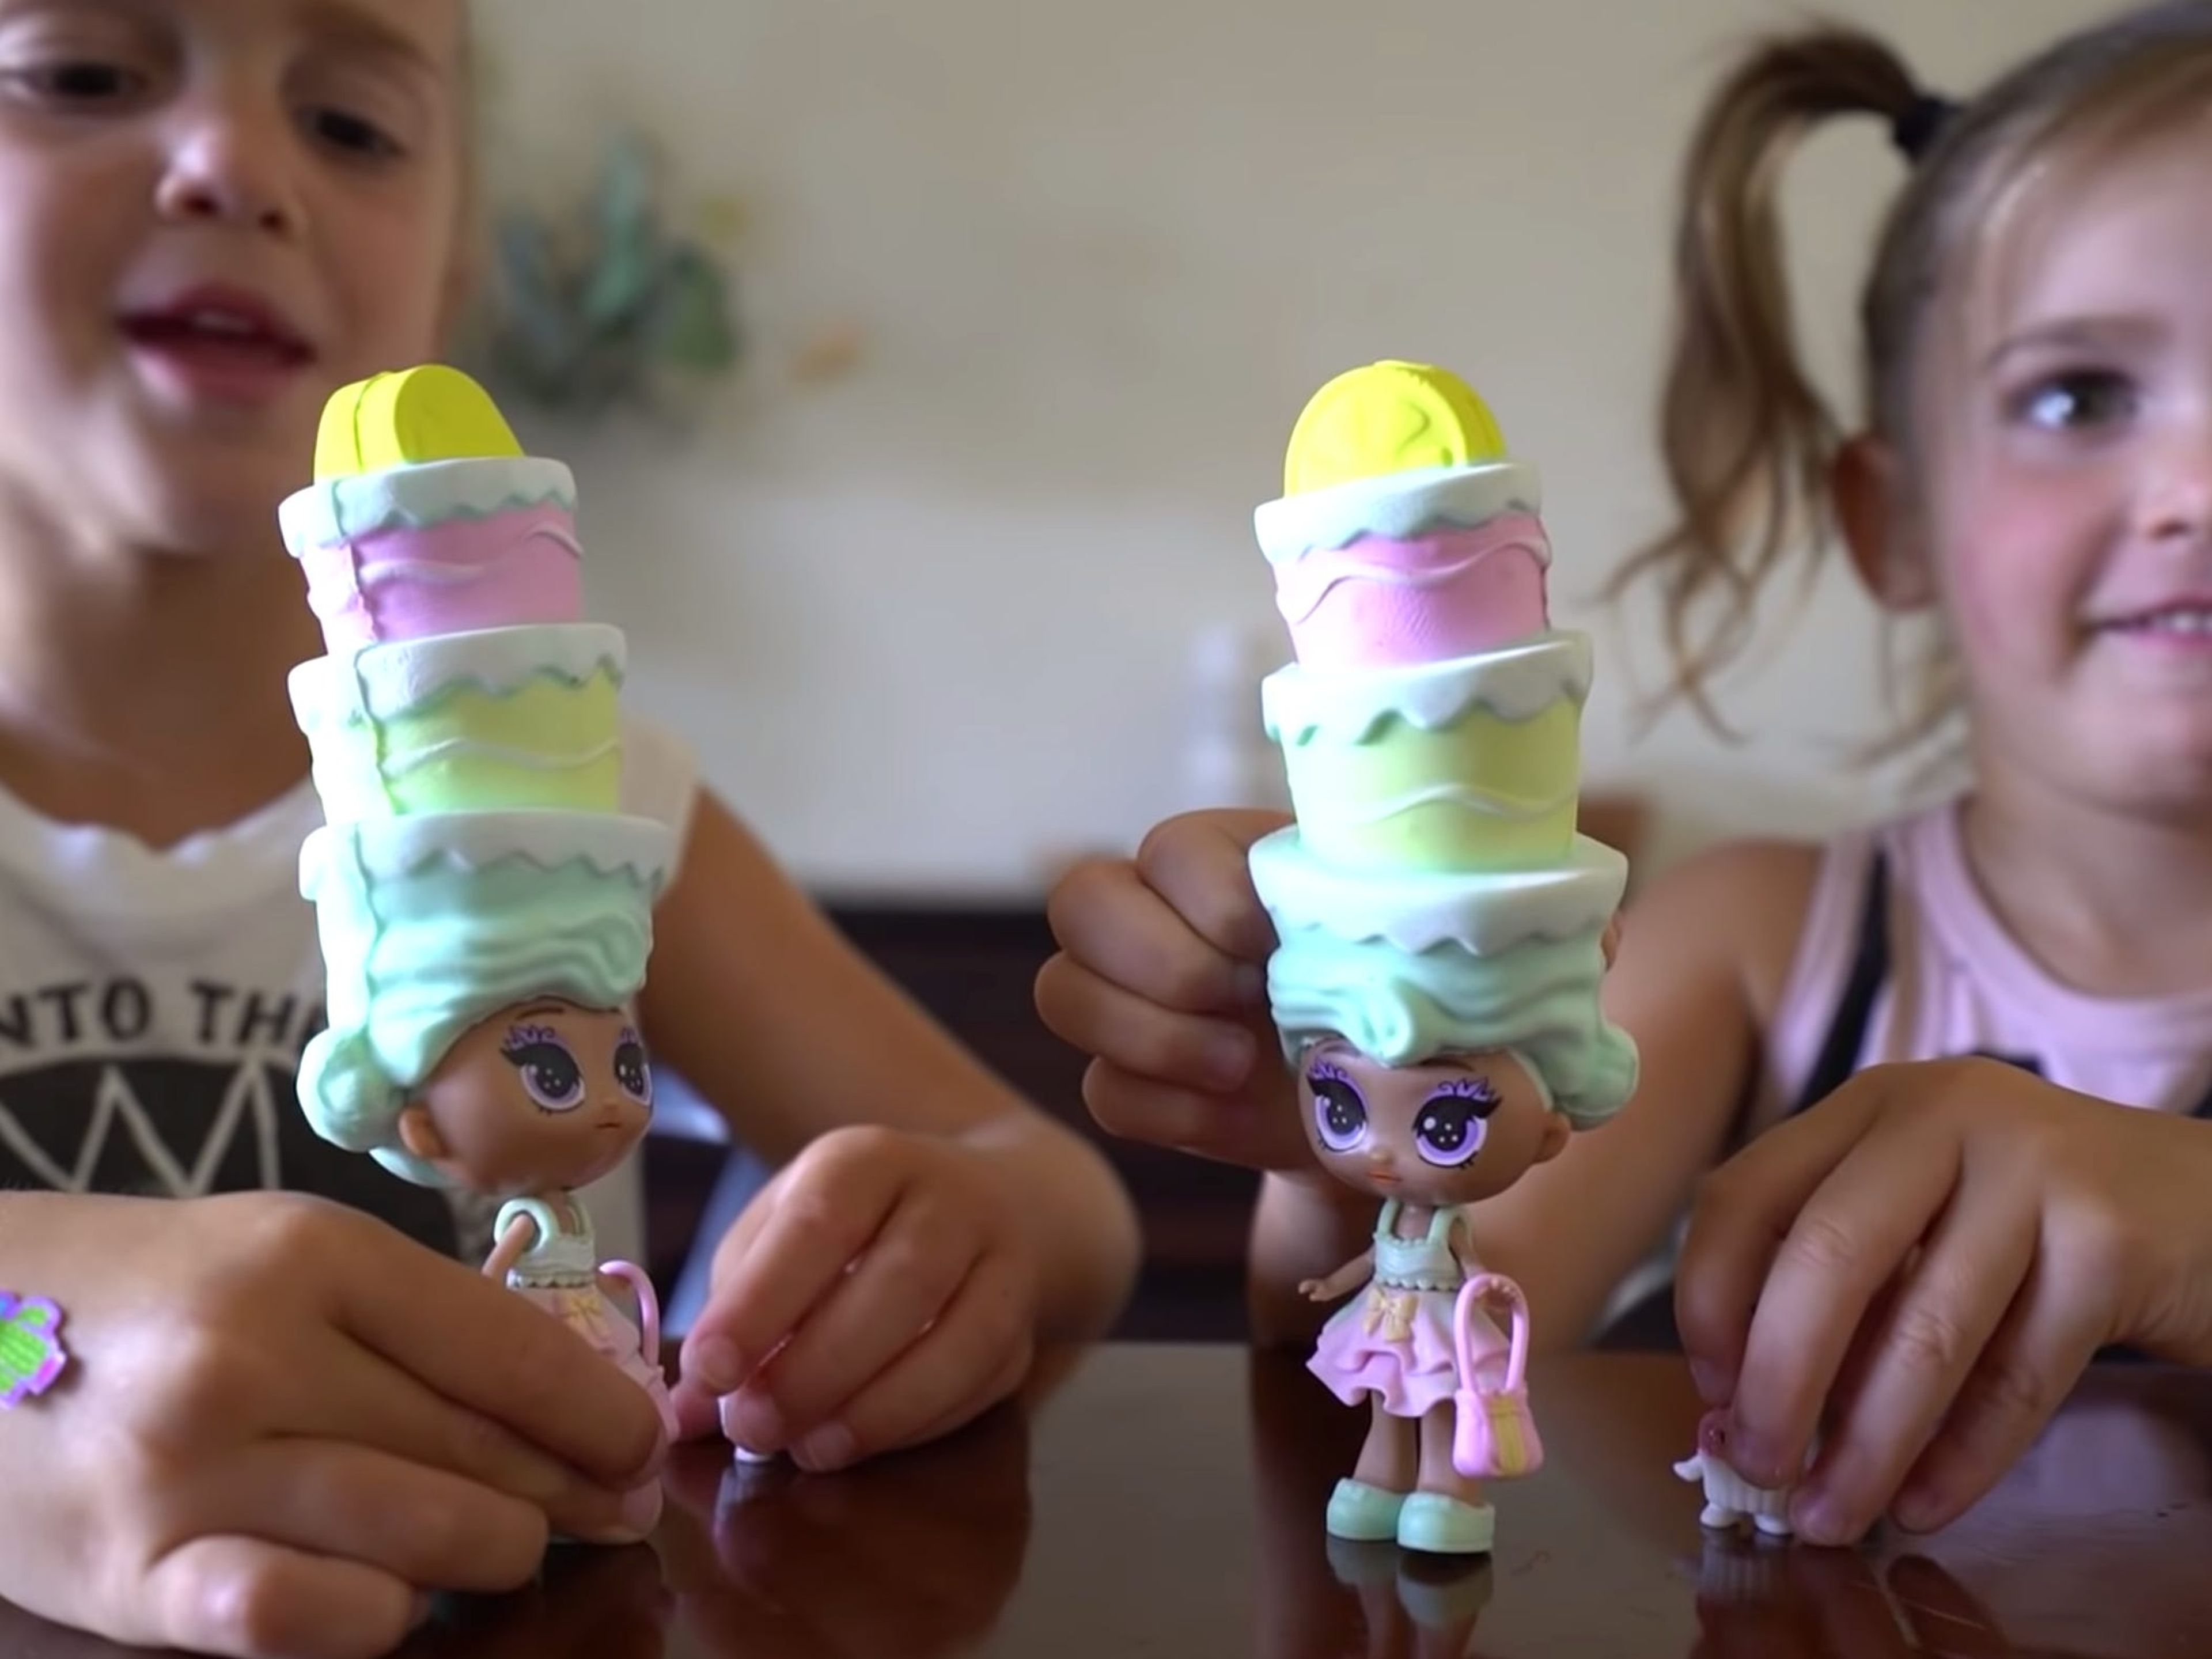 Las YouTubers Mila y Emily fueron dos de las influencers a las que Skyrocket envió muñecas para su campaña de marketing.